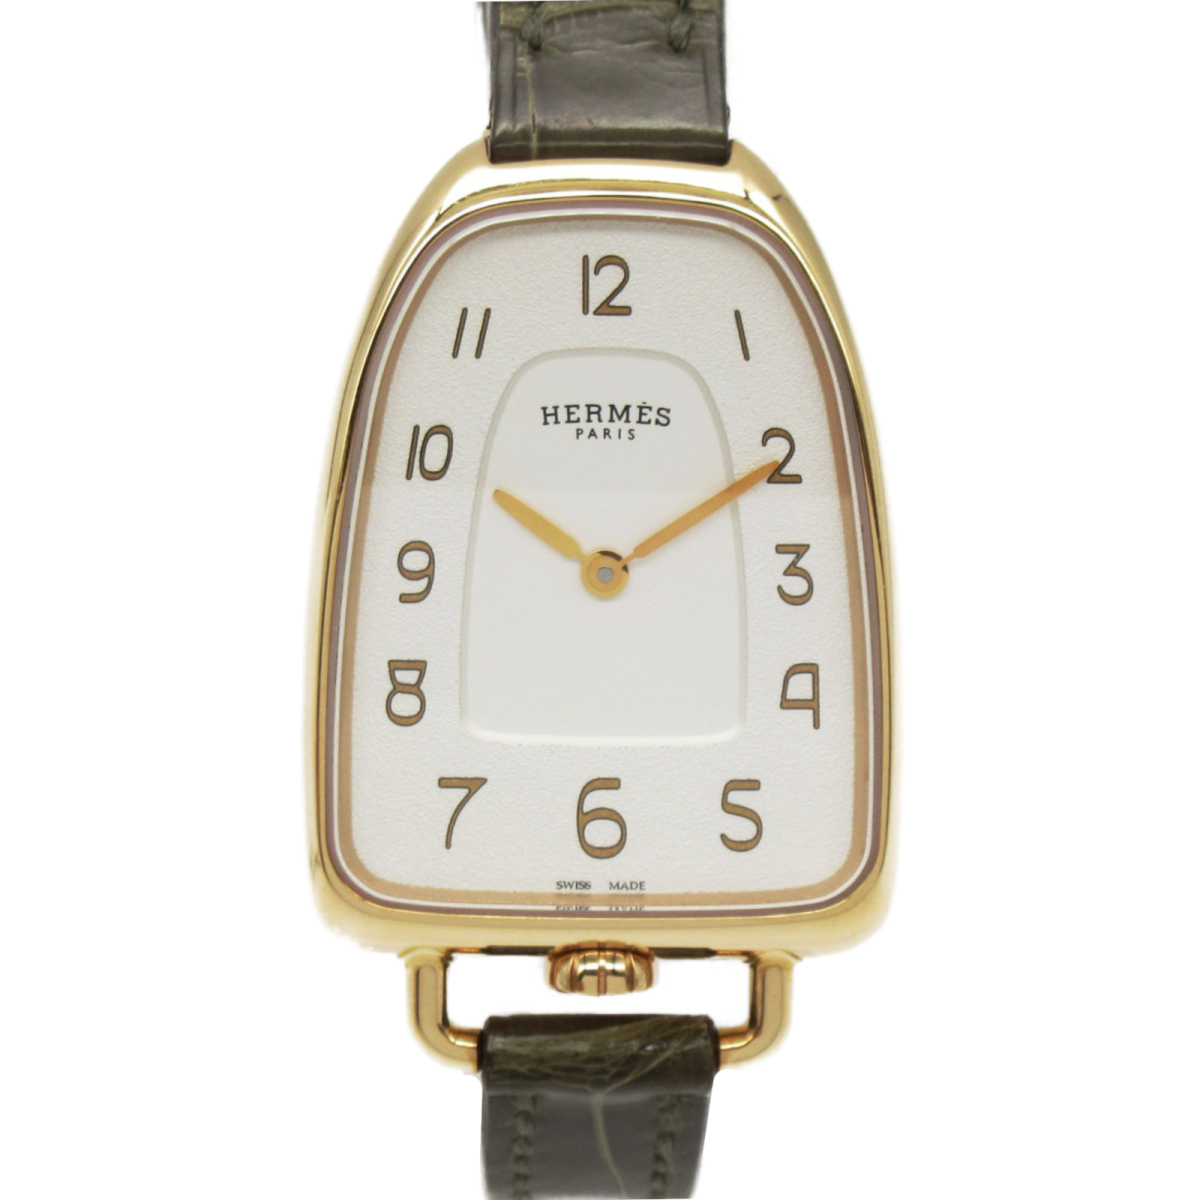 33％割引最高の HERMES エルメス 腕時計 ギャロップ ドゥ エルメス 腕時計 ウォッチ シルバーグレイン文字盤 シルバー系  K18(750)イエローゴールド 中古 エルメス ブランド腕時計 アクセサリー、時計-AATHAAR.NET